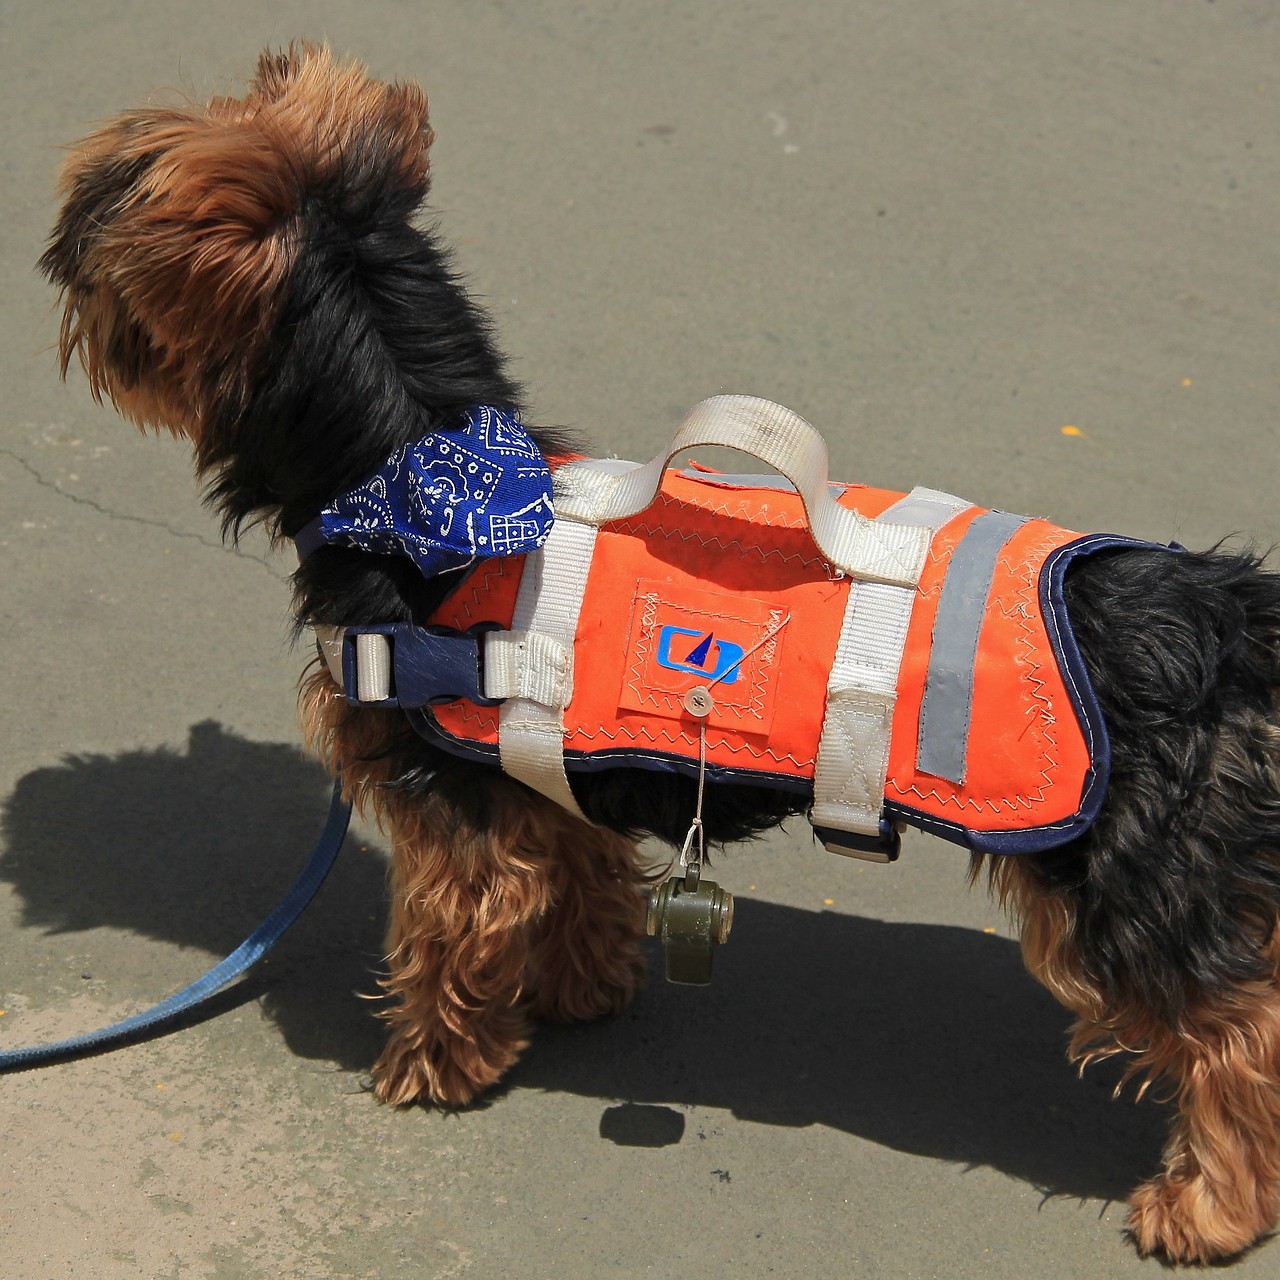 best rated dog life jacket